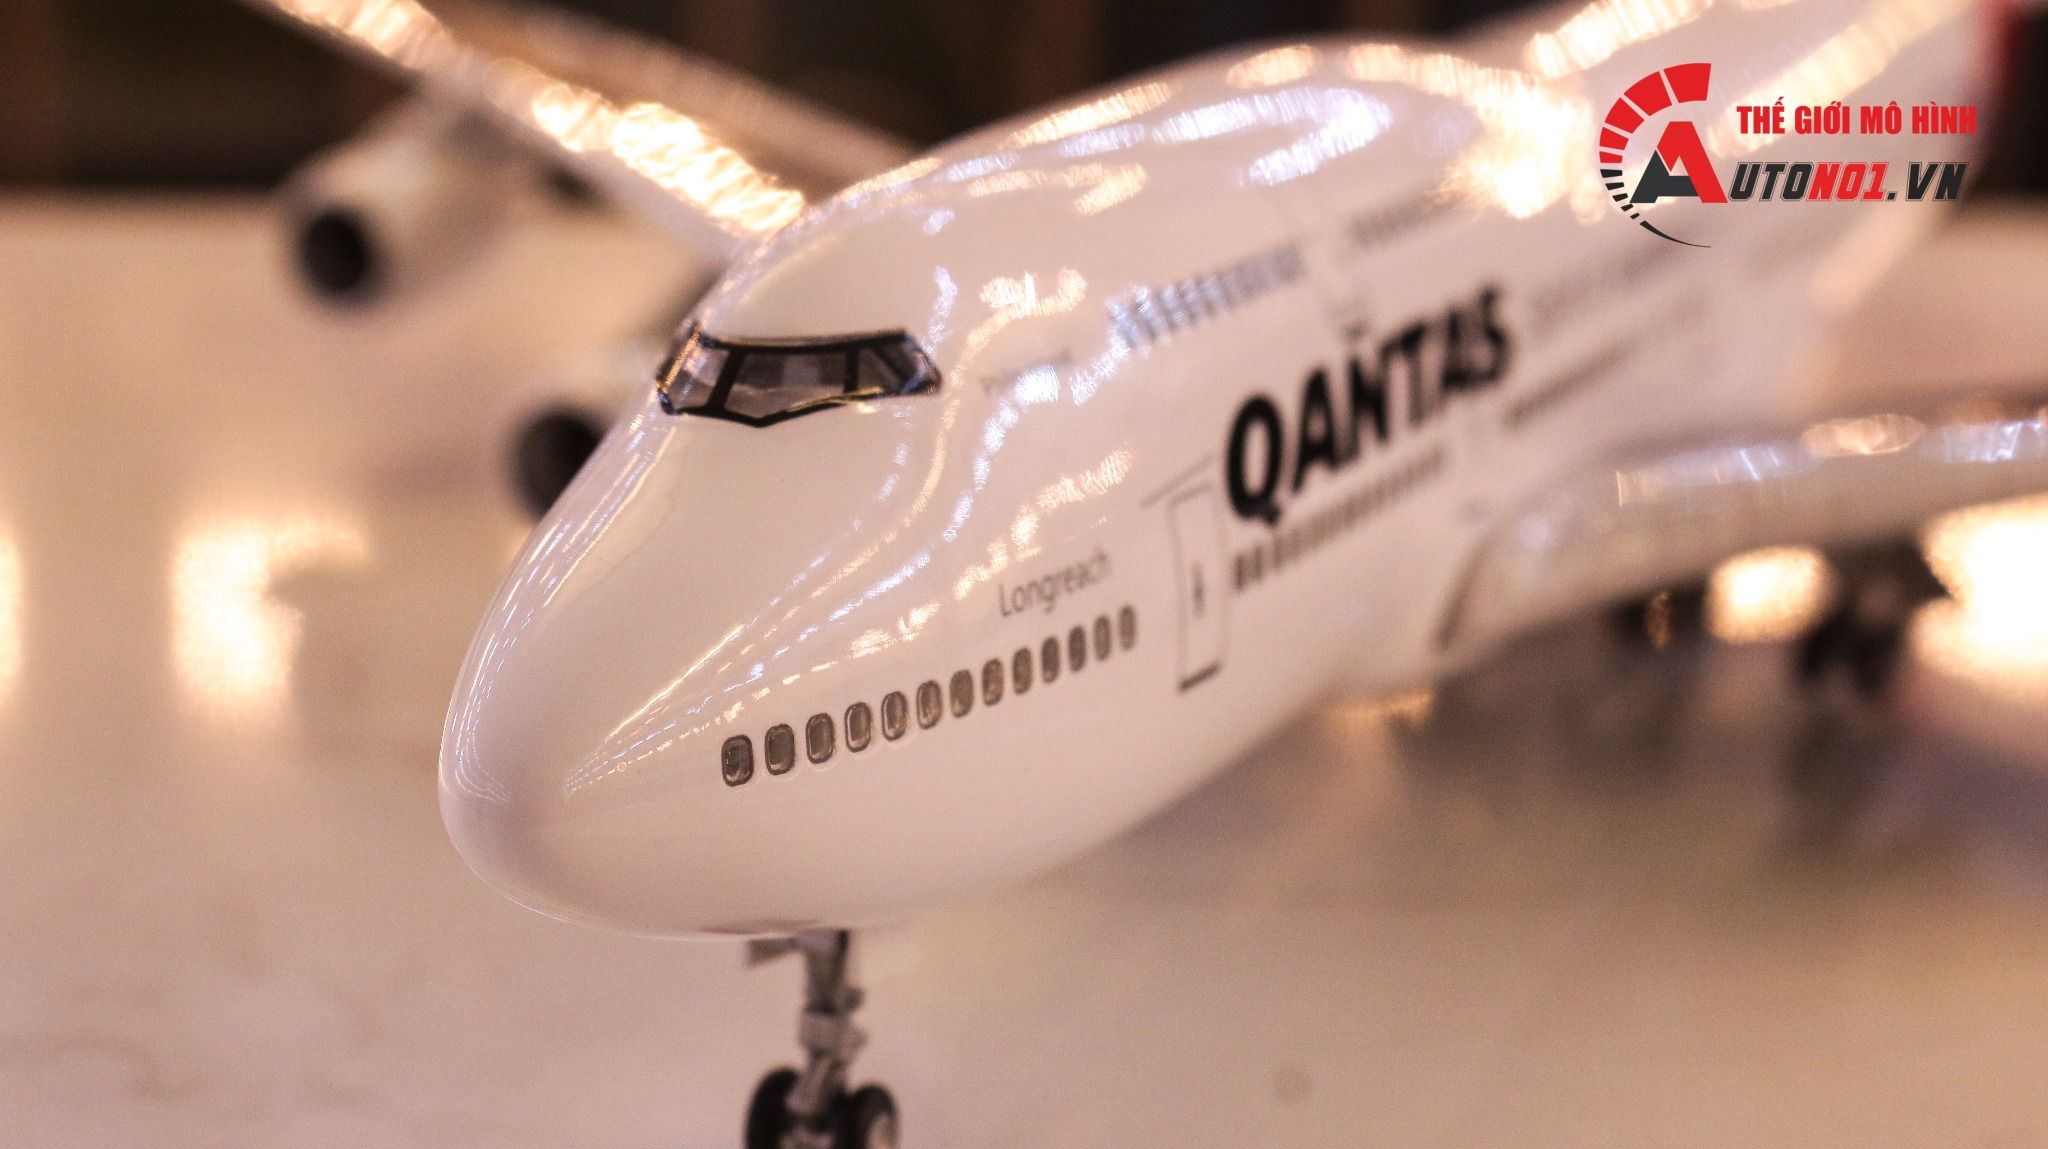  Mô hình máy bay Australia Qantas Boeing B747 47cm 1:130 có đèn led tự động theo tiếng vỗ tay hoặc chạm MB47006 